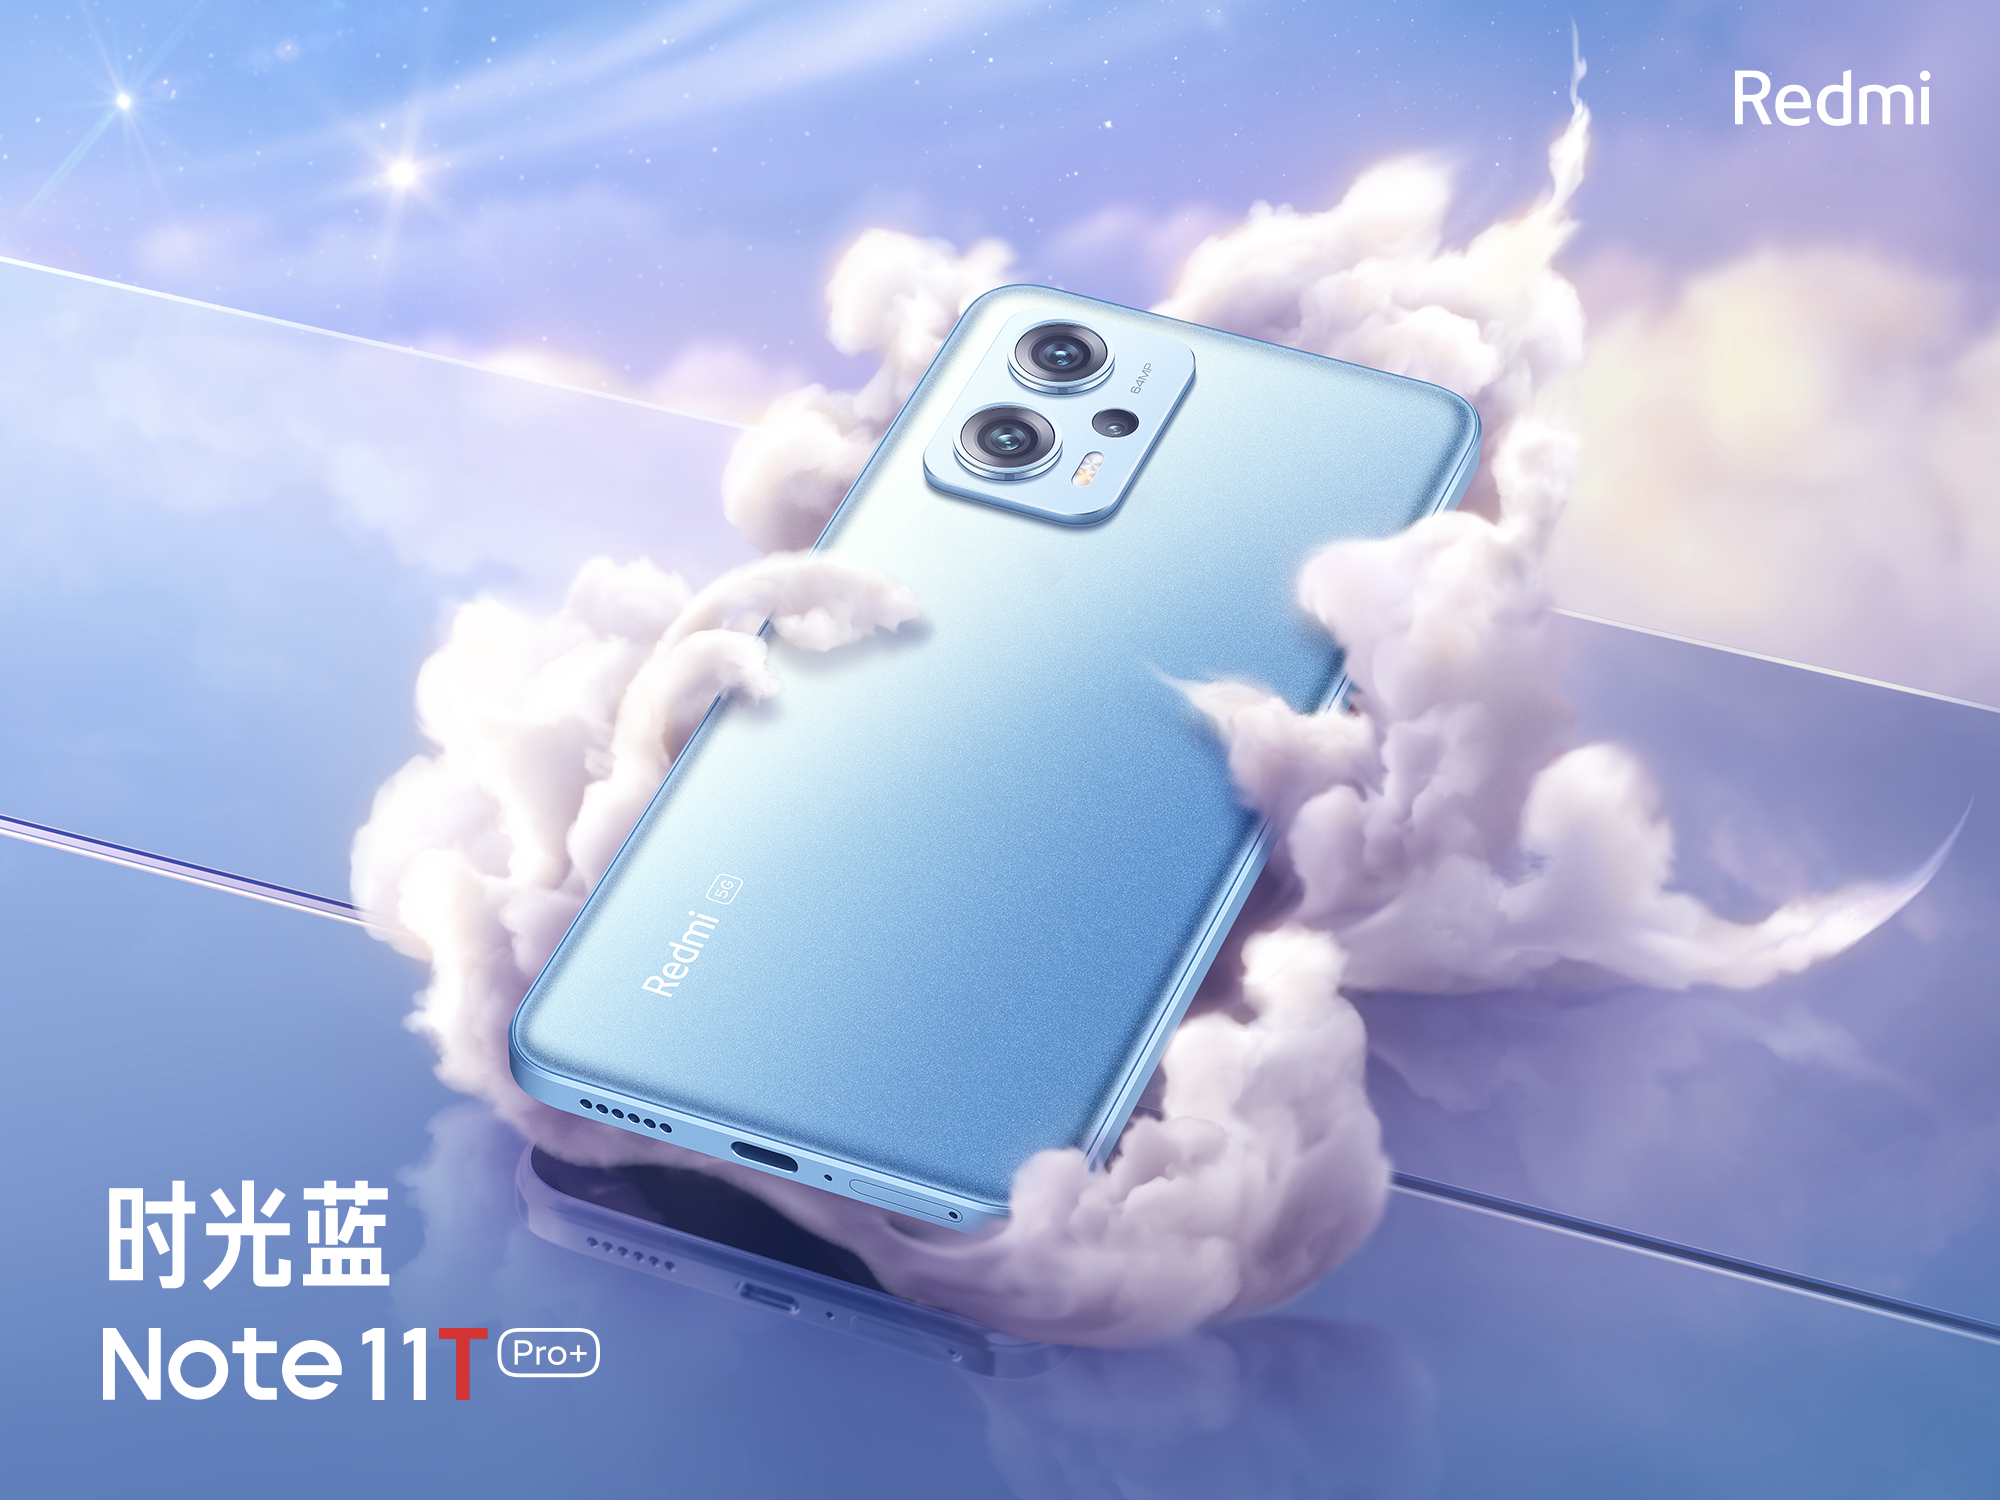 Redmi Note 11T Pro+ es el primer smartphone en la historia de la serie con 512 GB de memoria